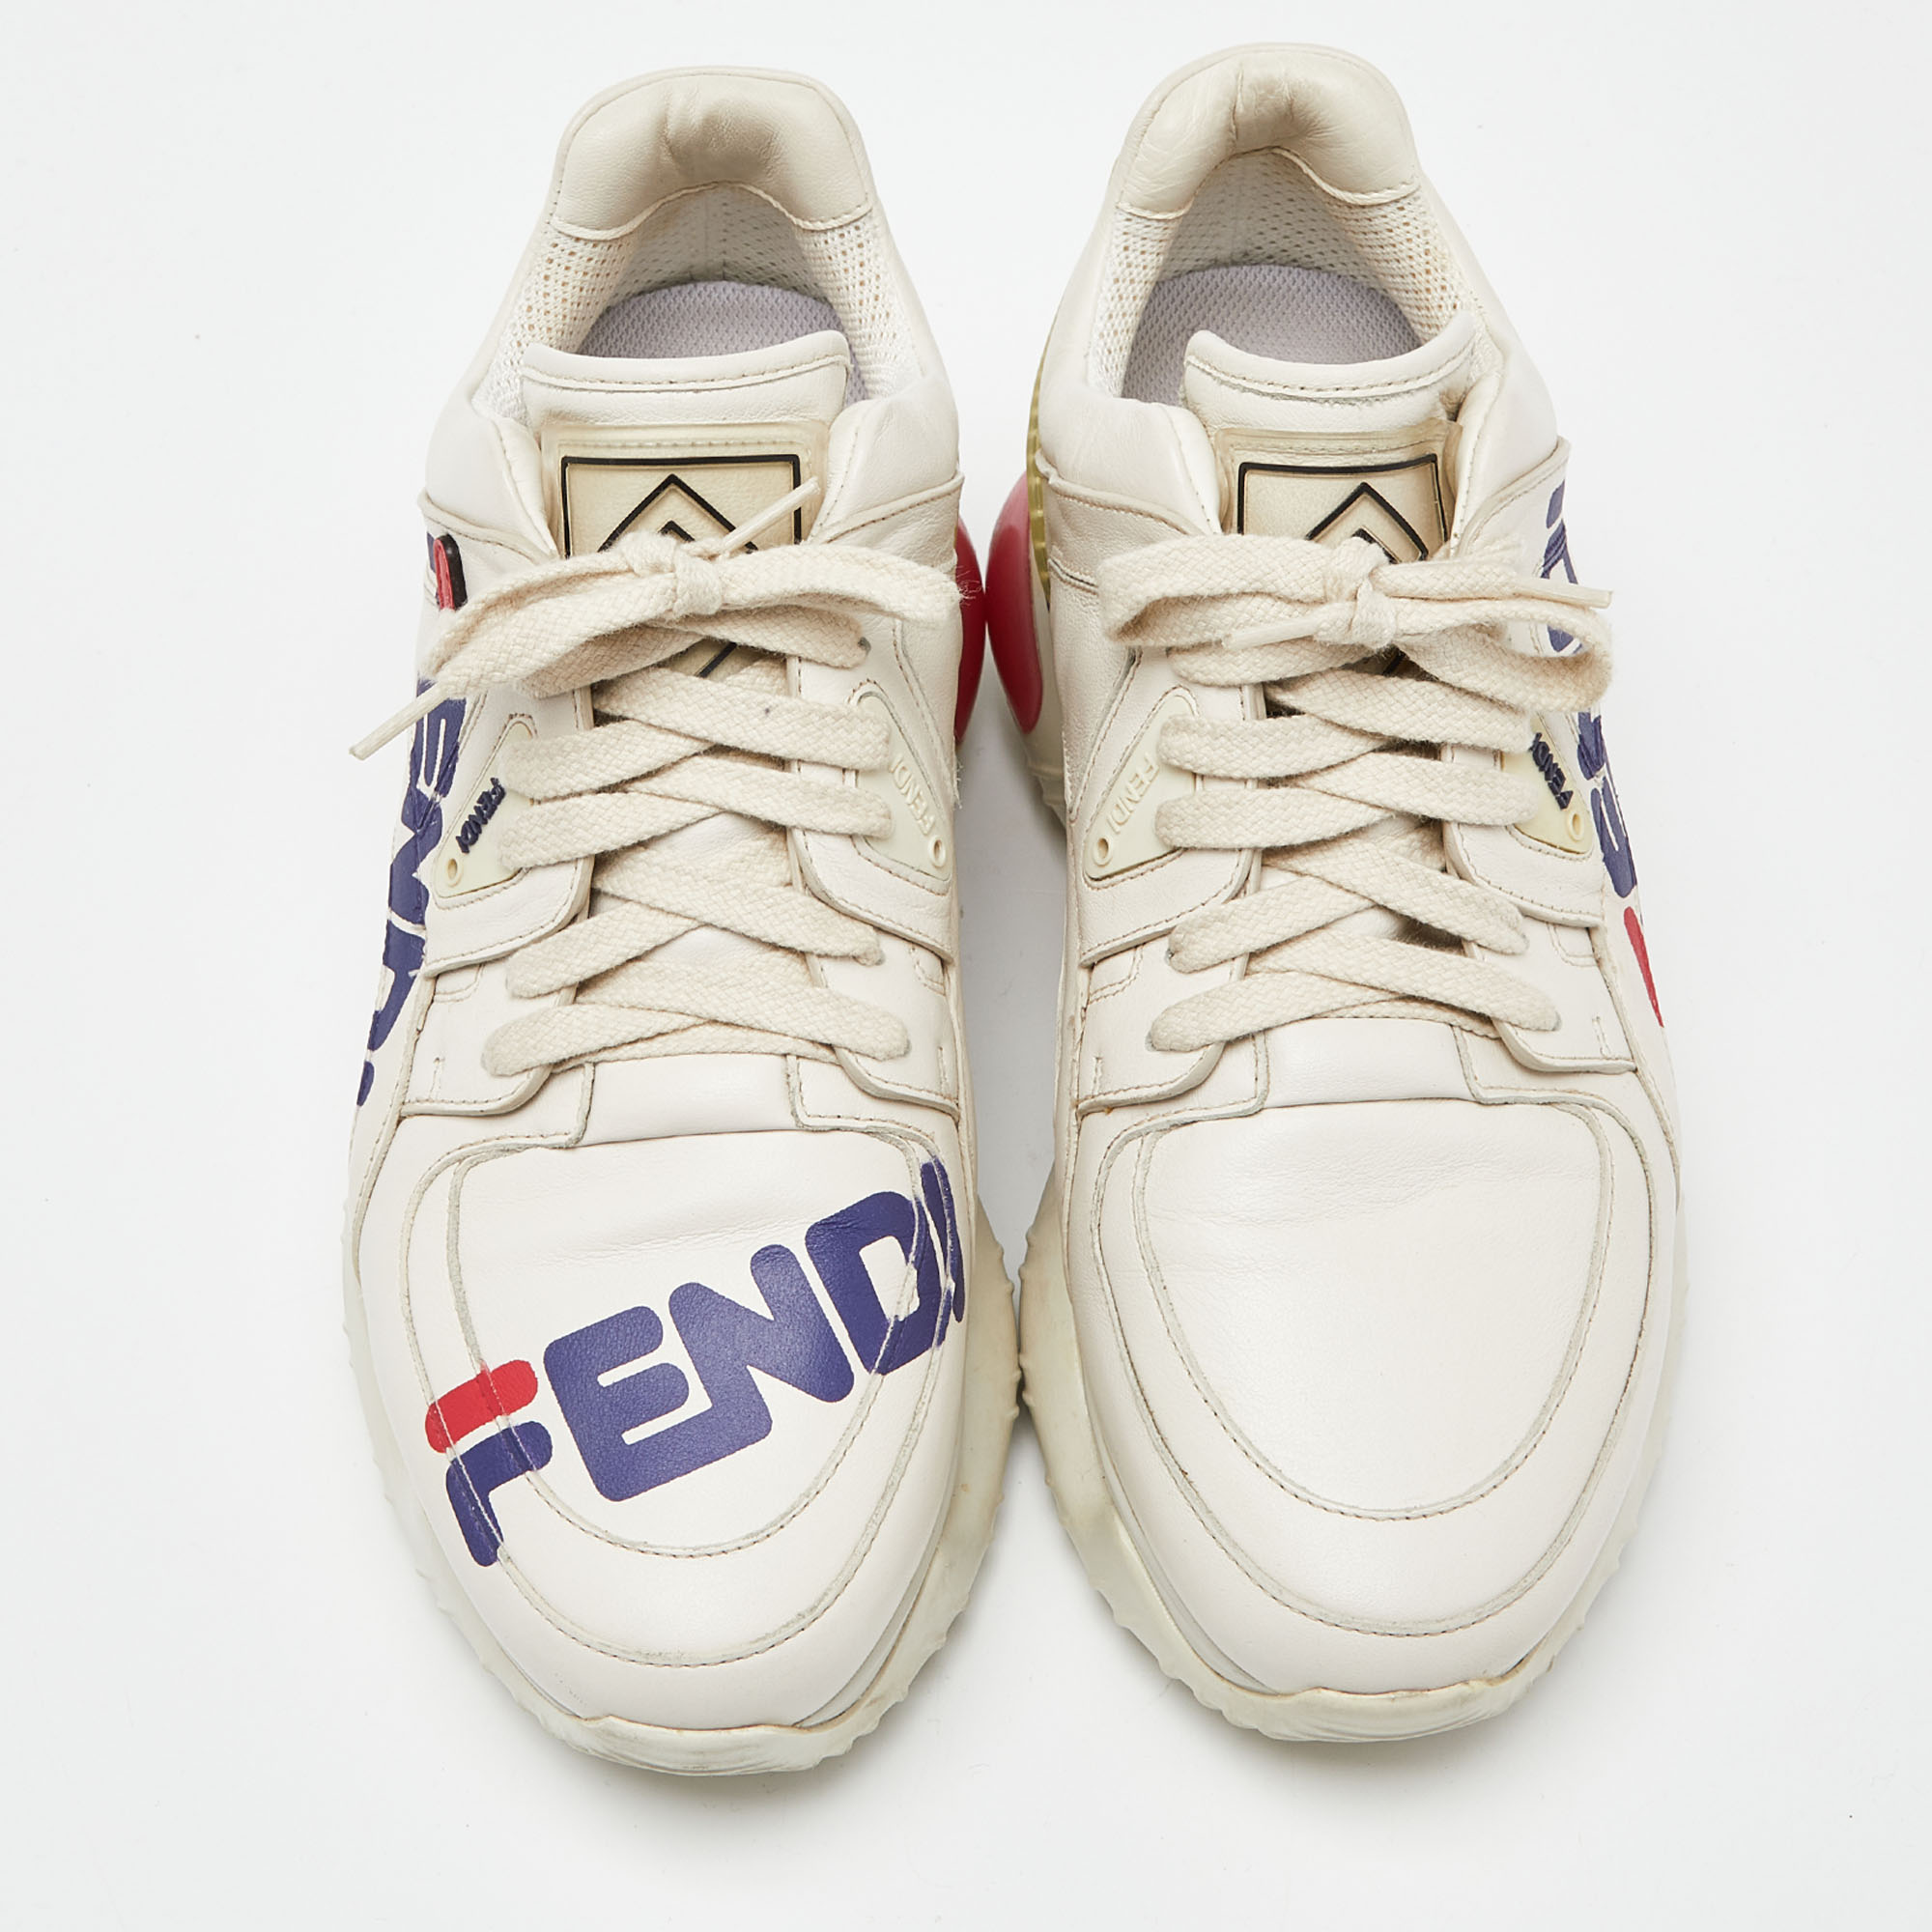 Fendi Off White Leather And Rubber Fendi Fila Mania Sneakers Size 39